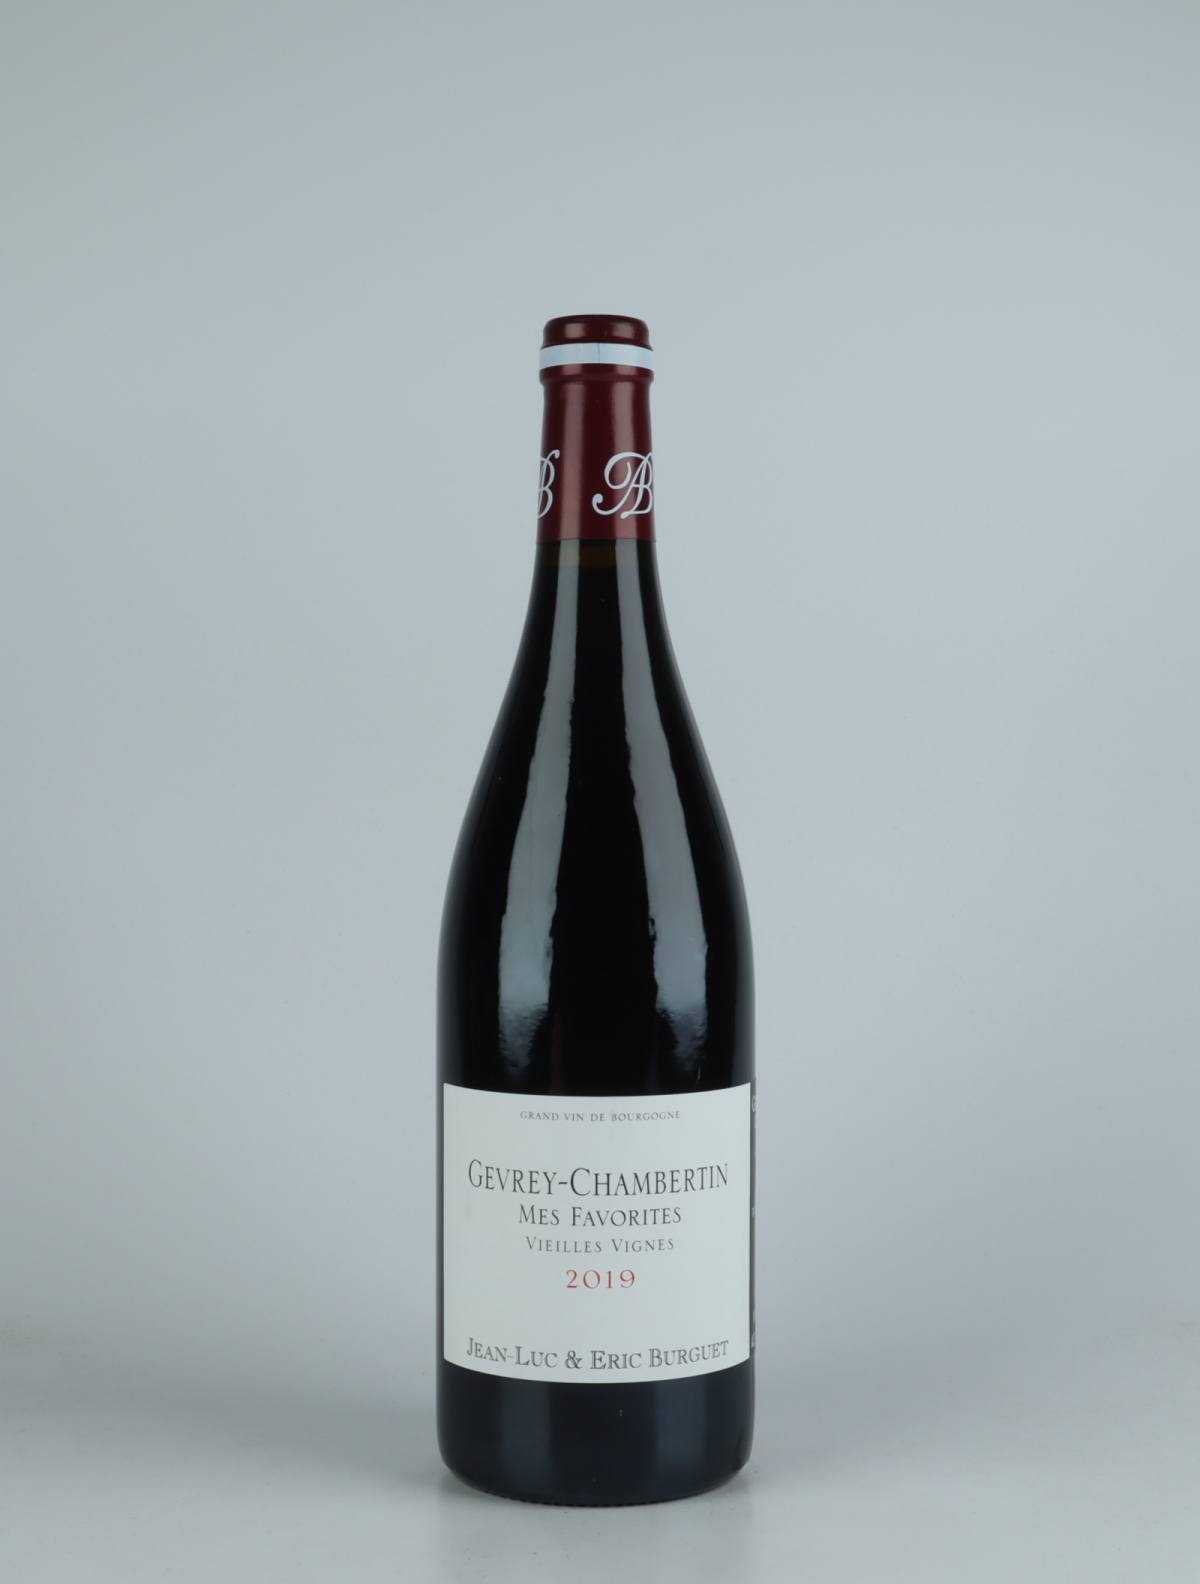 En flaske 2019 Gevrey-Chambertin - Mes Favorites Rødvin fra Jean-Luc & Eric Burguet, Bourgogne i Frankrig